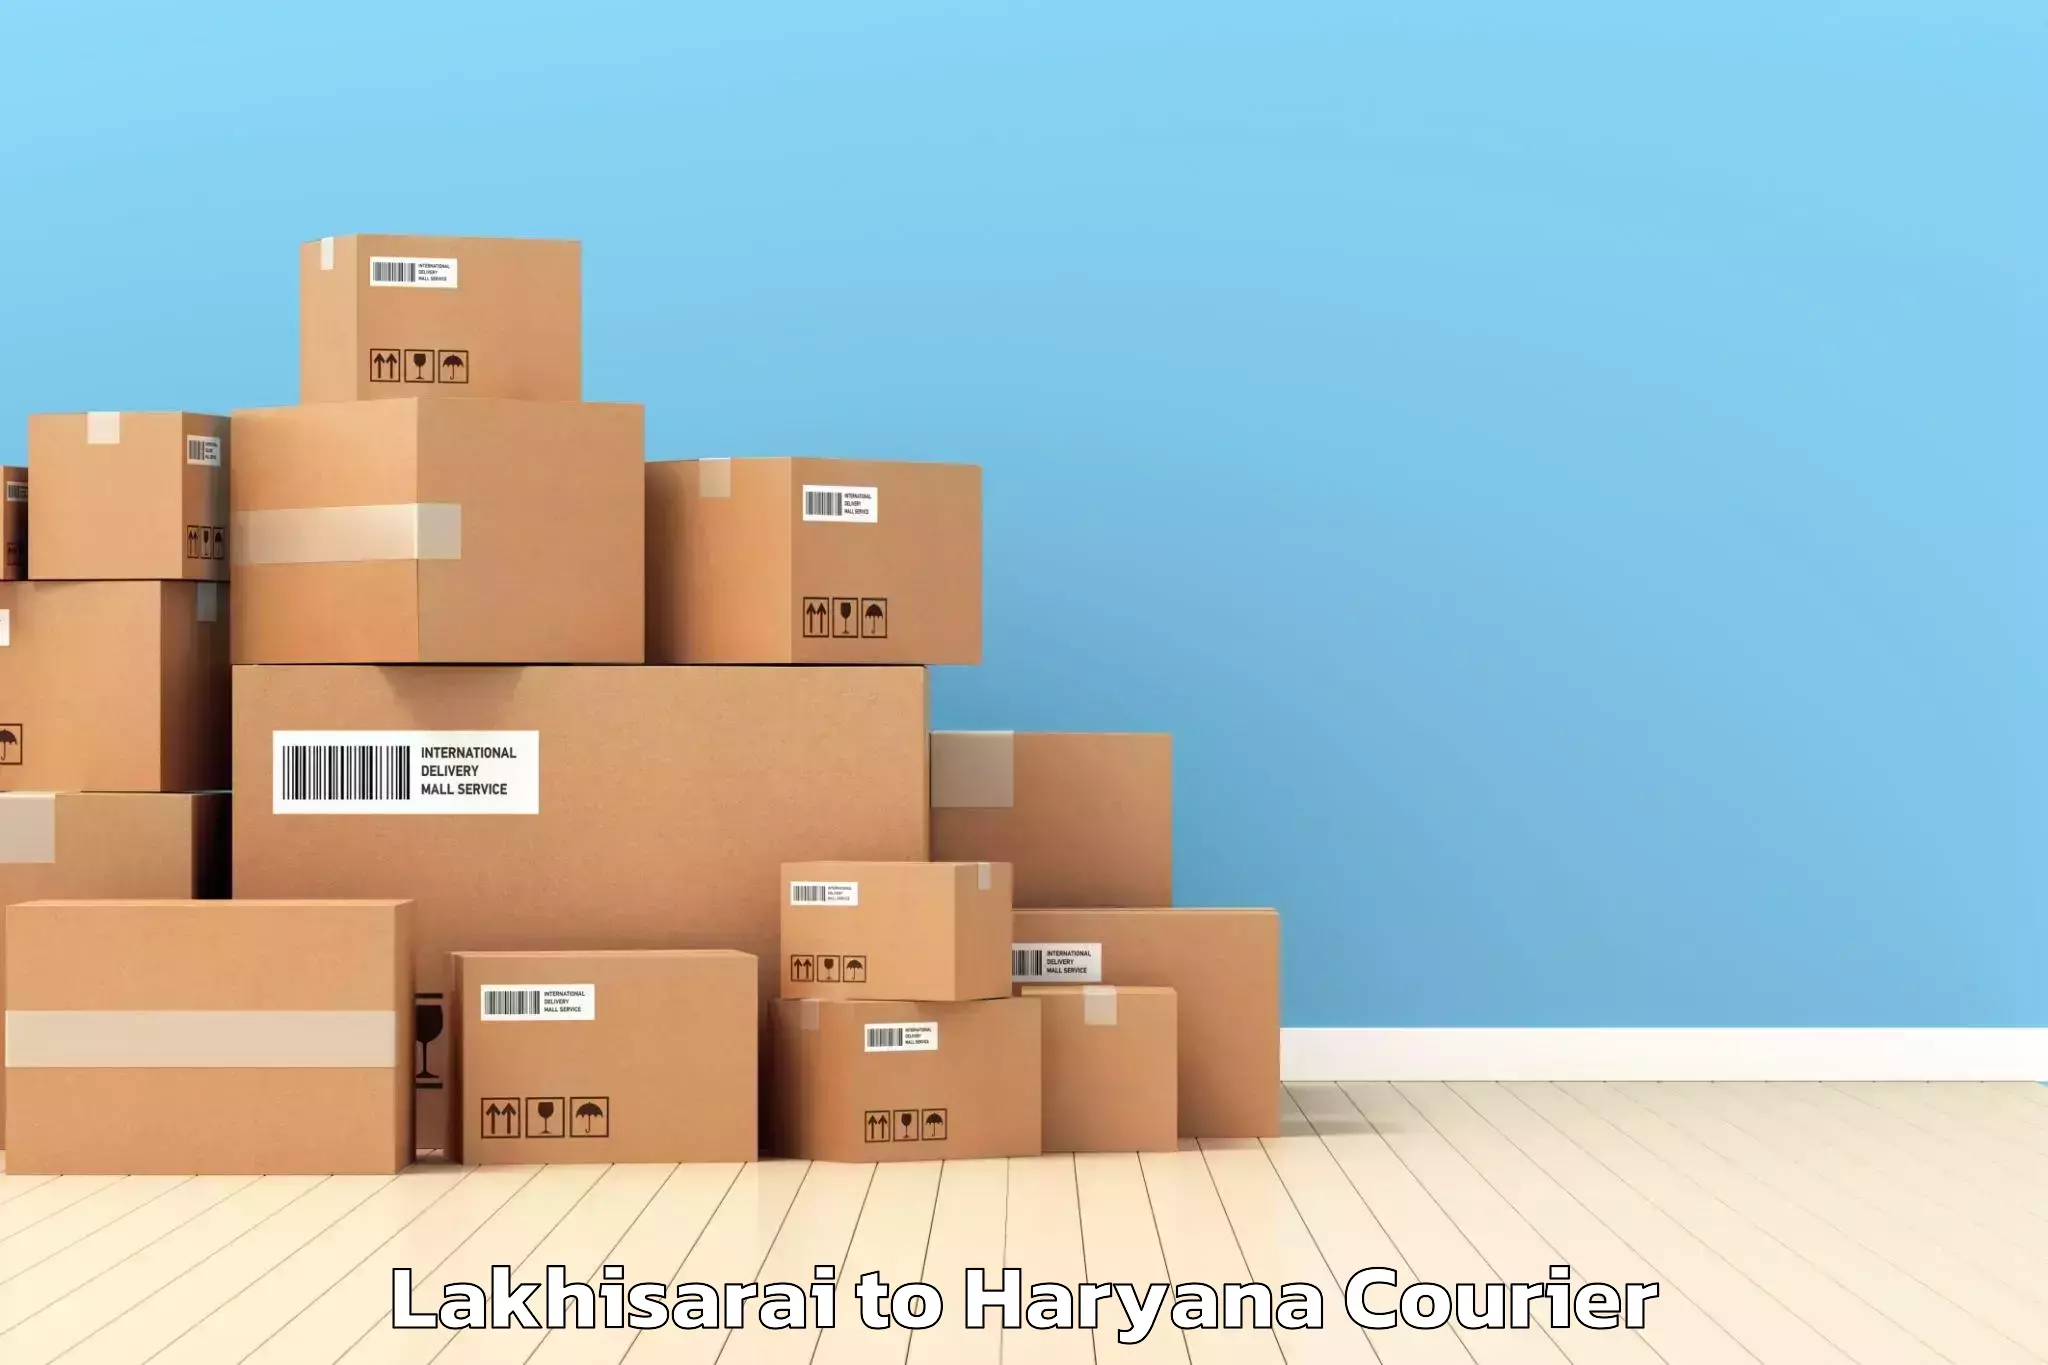 Moving and packing experts Lakhisarai to Gurugram